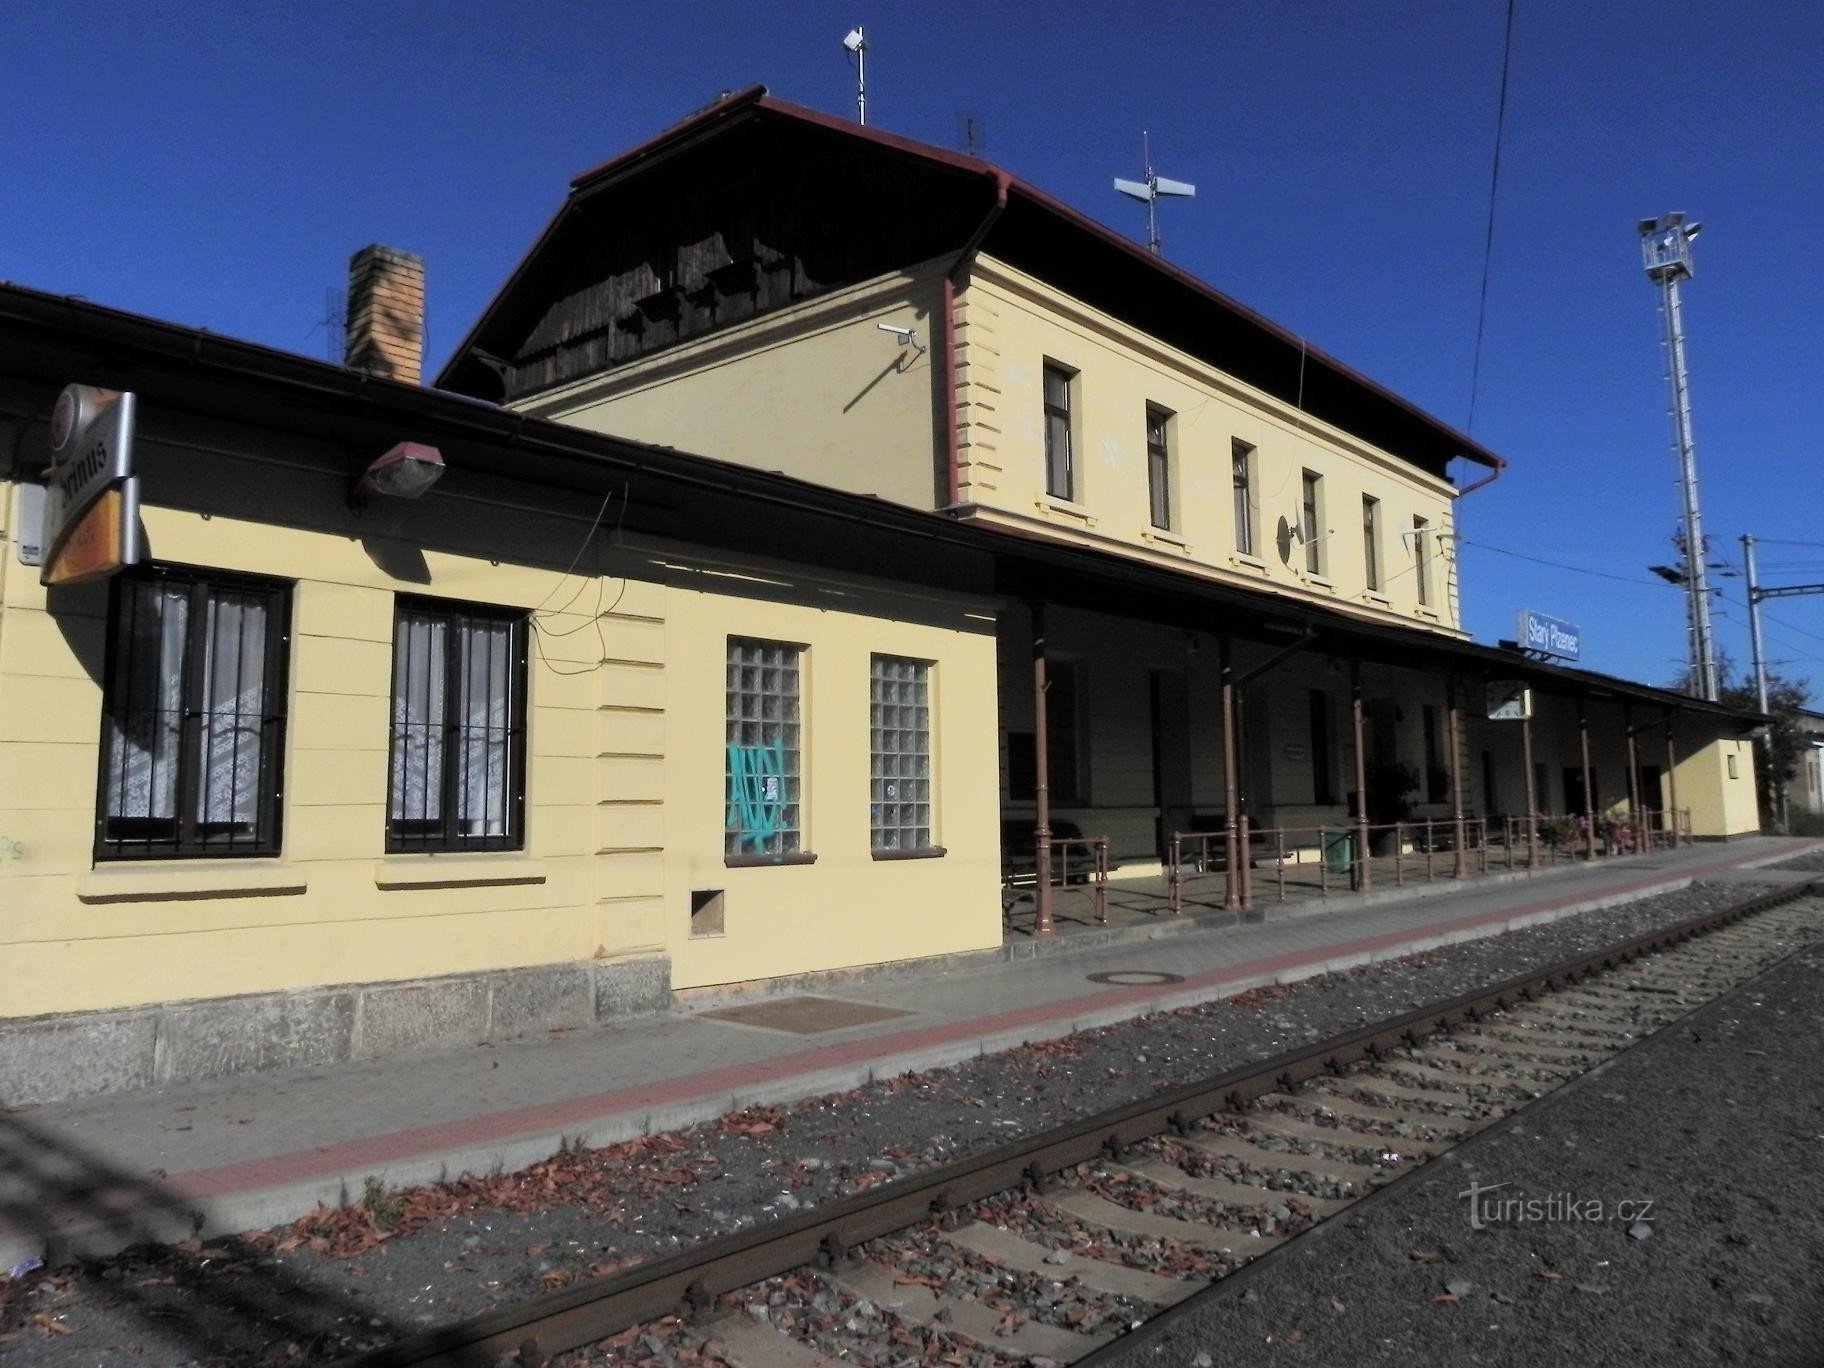 Starý Plzenec, dworzec kolejowy